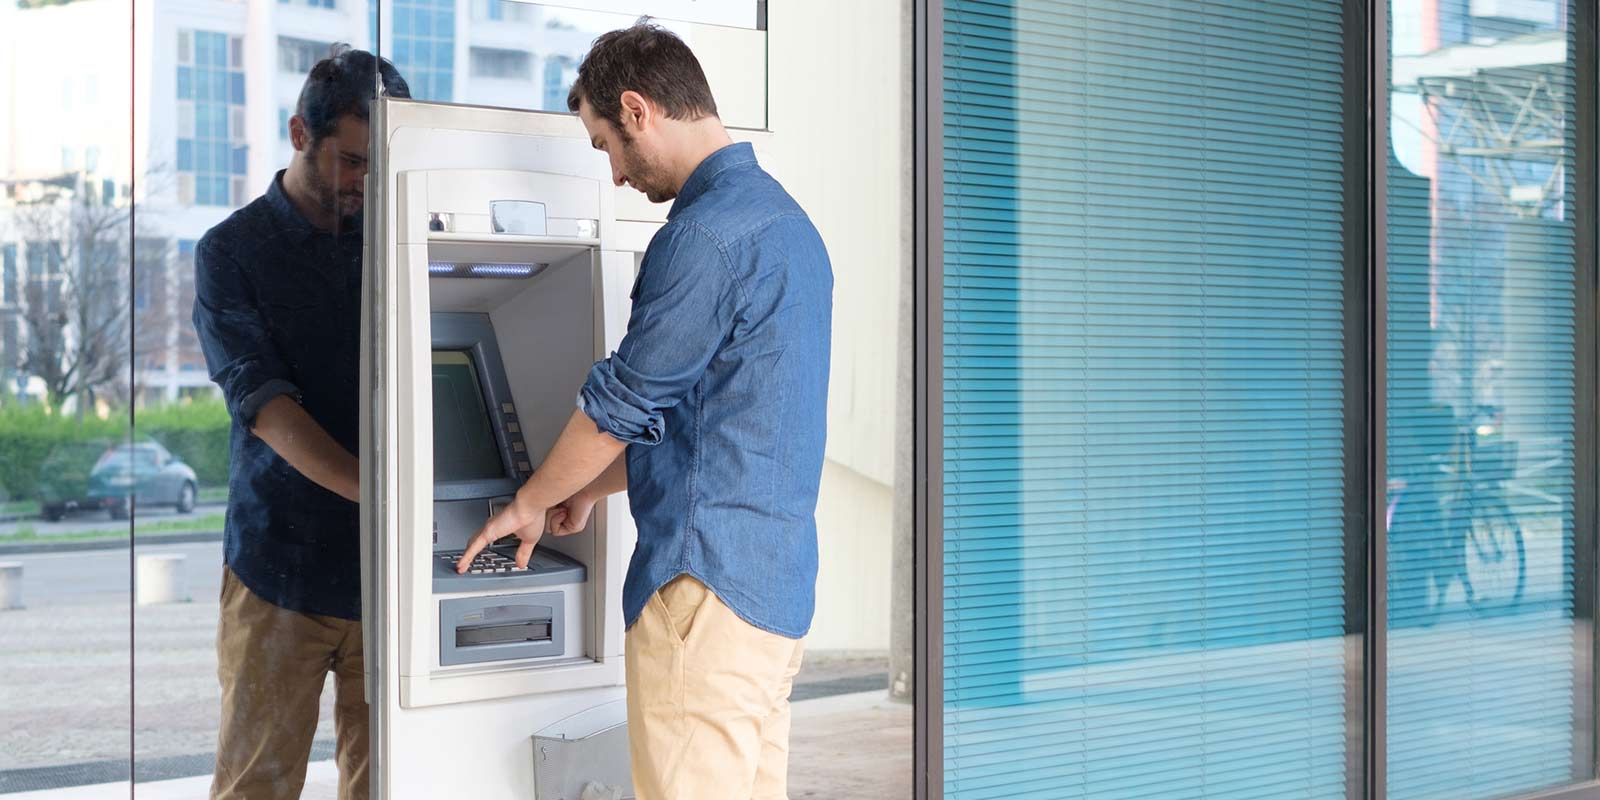 A man using an ATM.